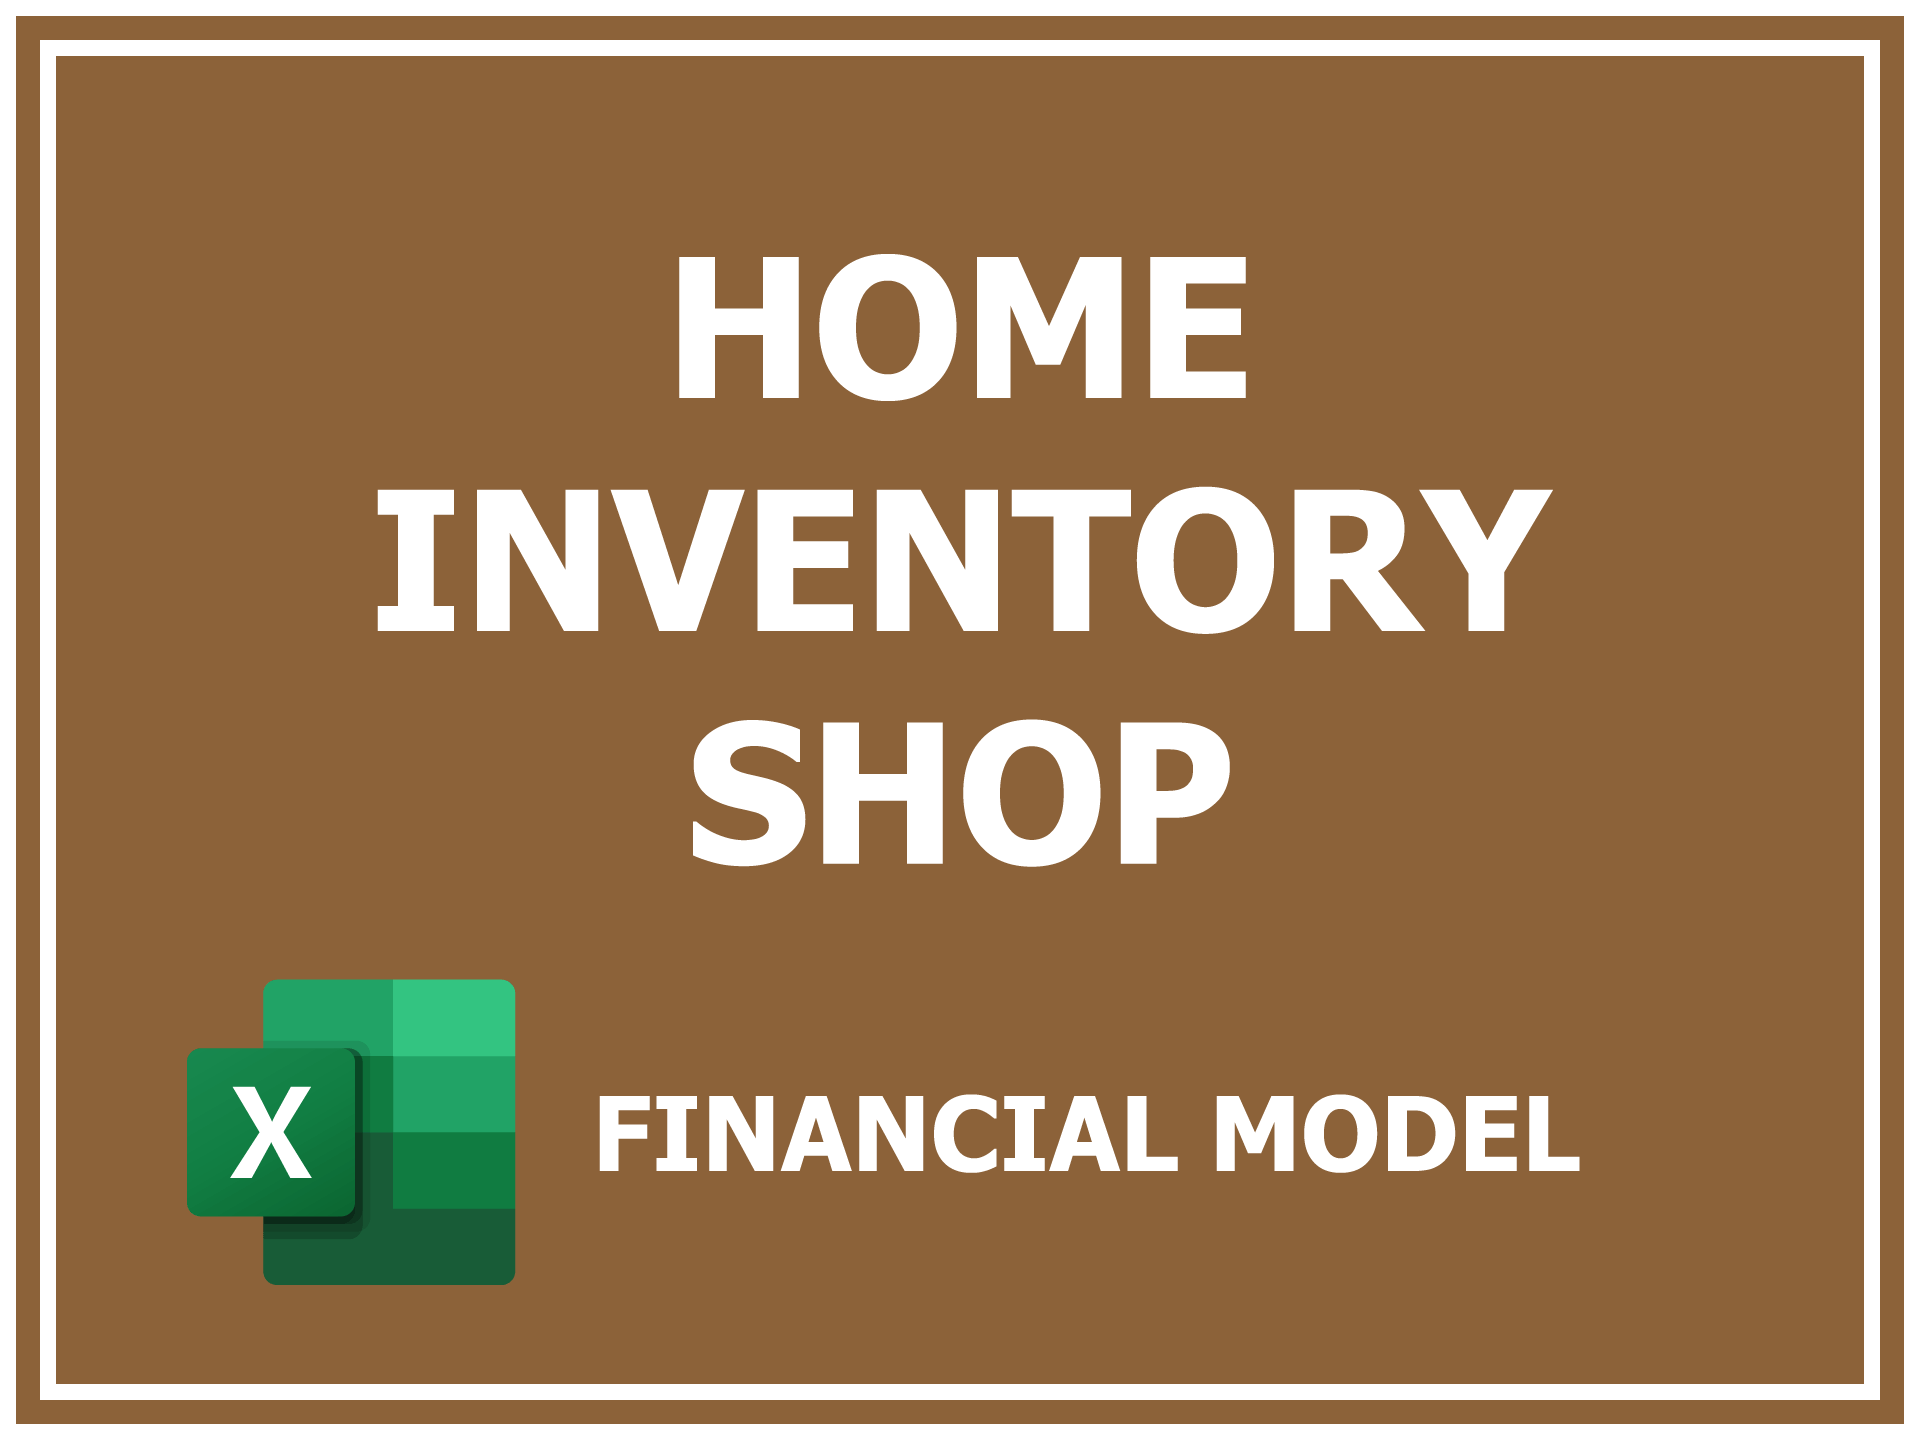 Home Inventory Shop